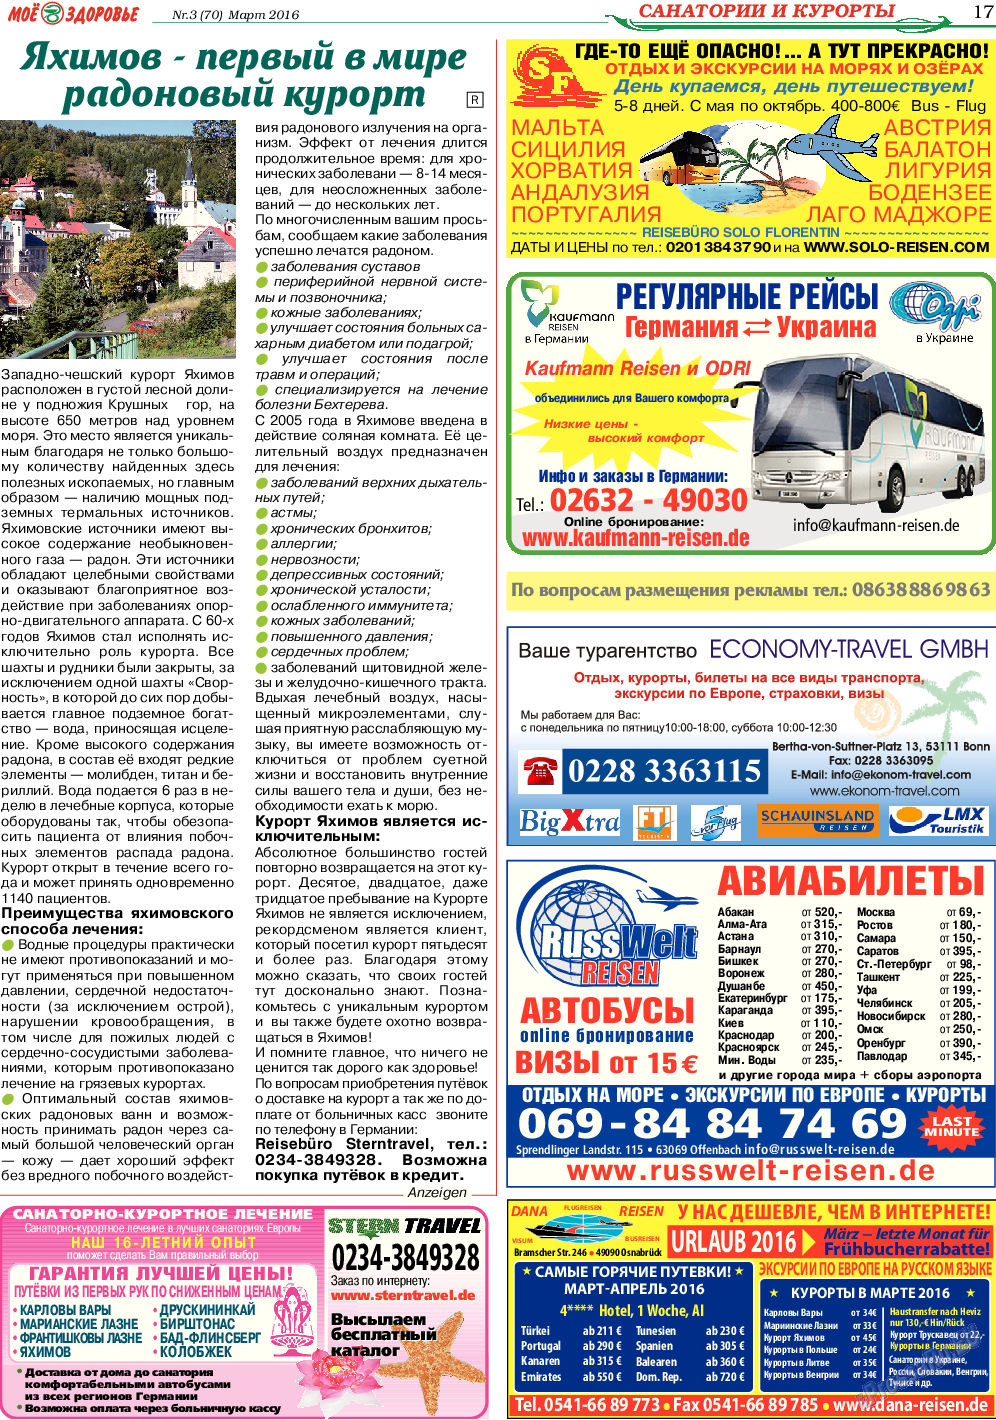 Кругозор, газета. 2016 №3 стр.17